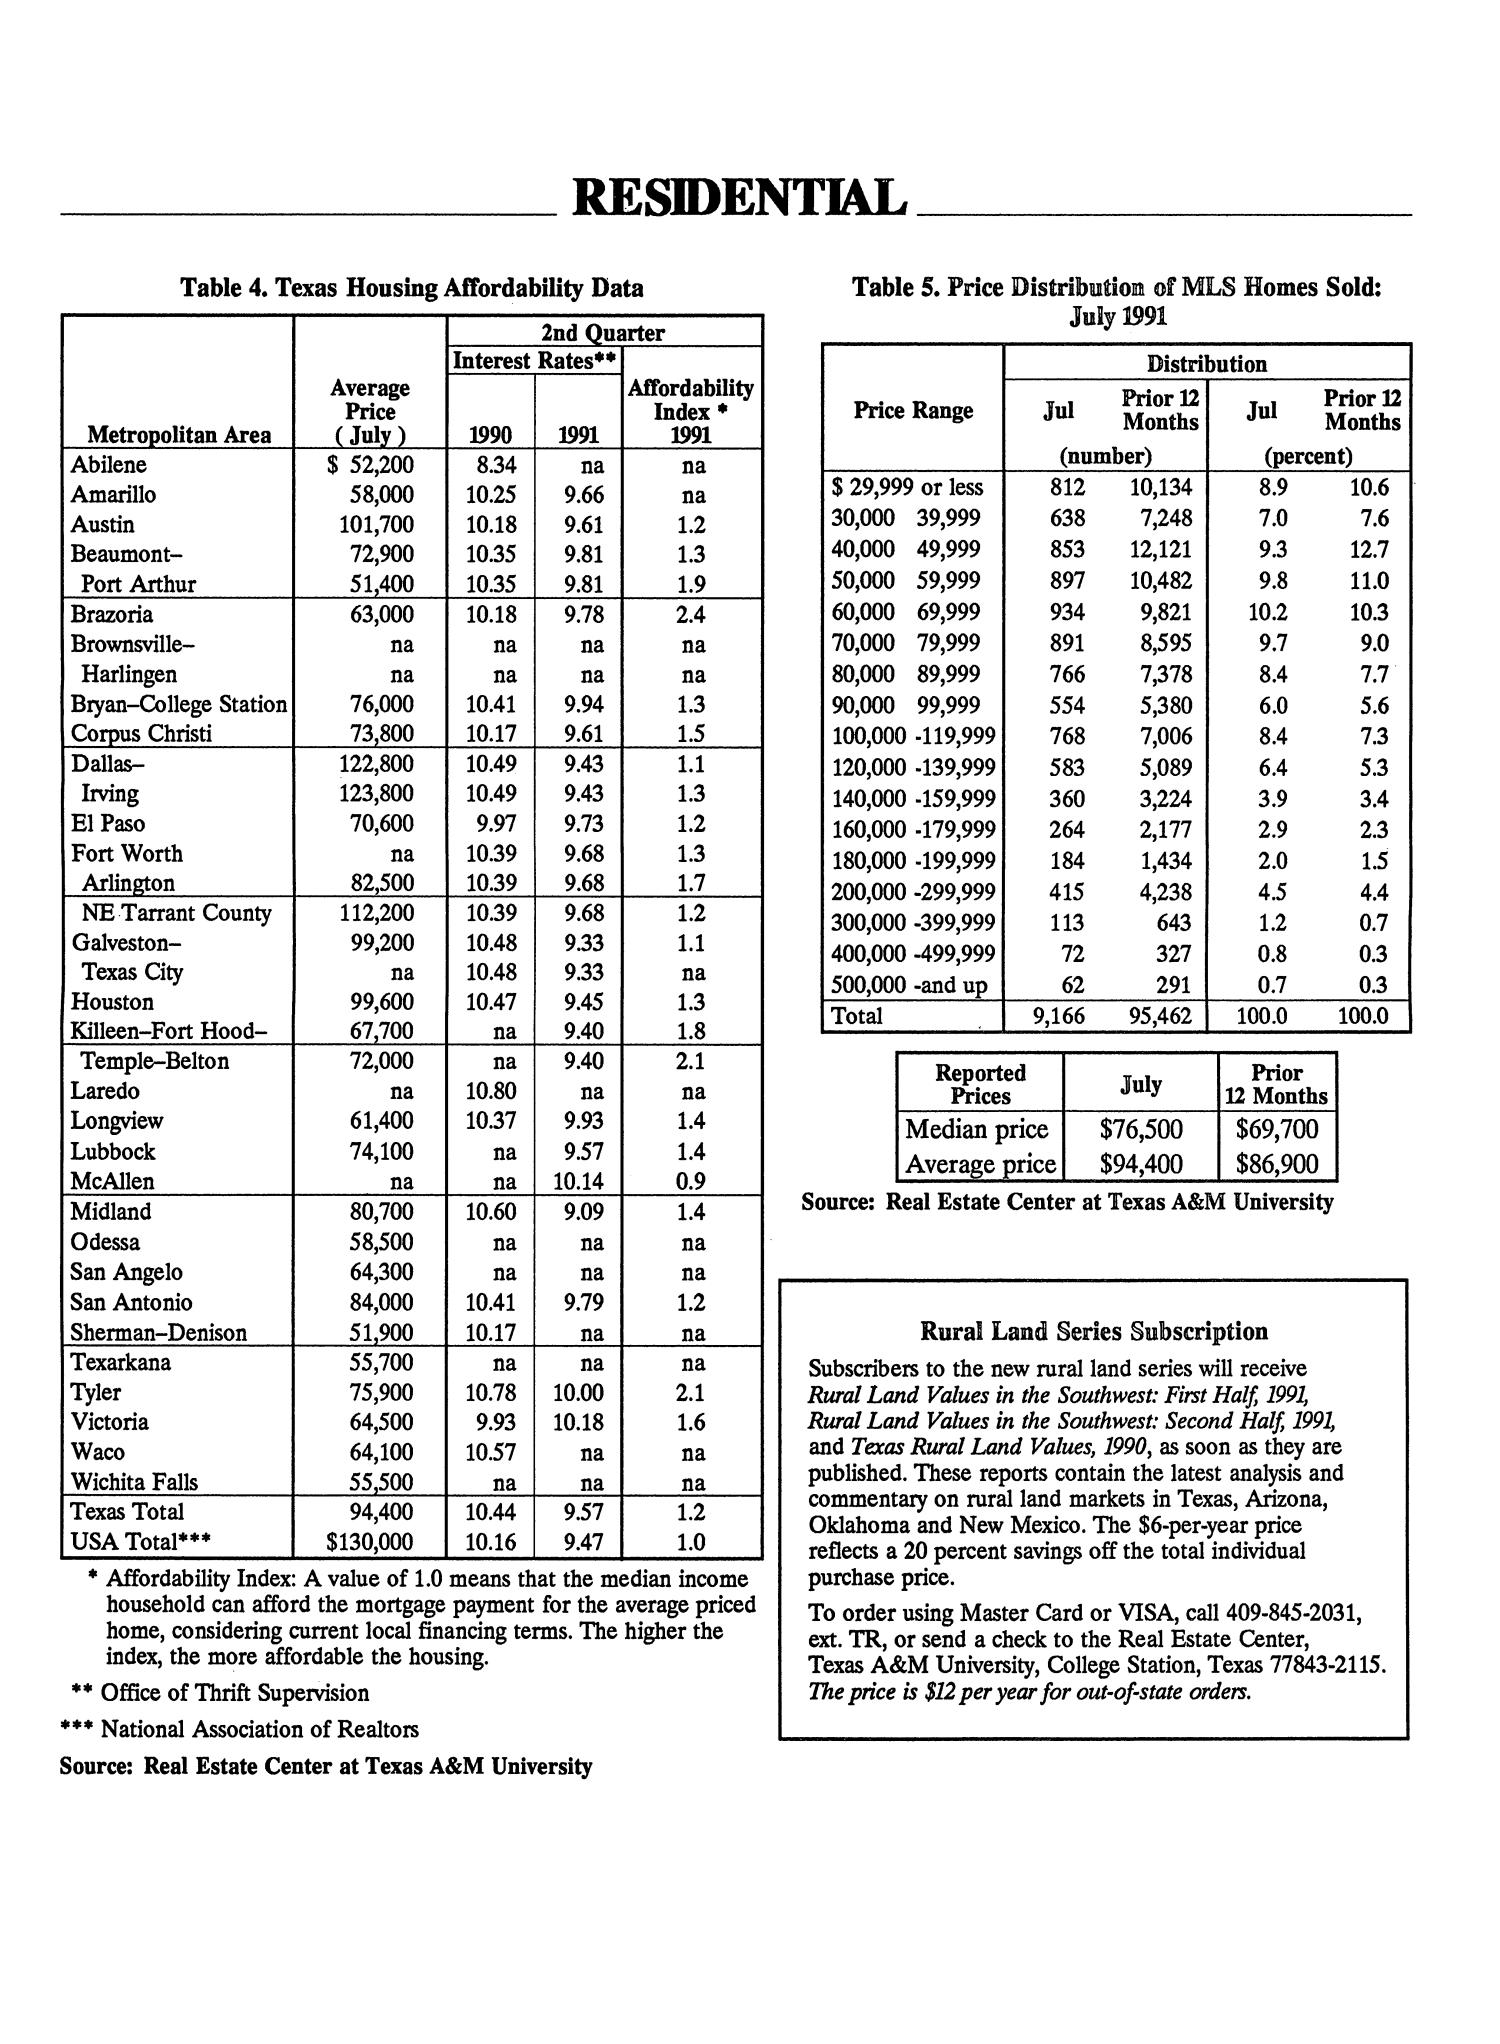 Texas Real Estate Center Trends, Volume 5, Number 1, September 1991
                                                
                                                    Insert
                                                